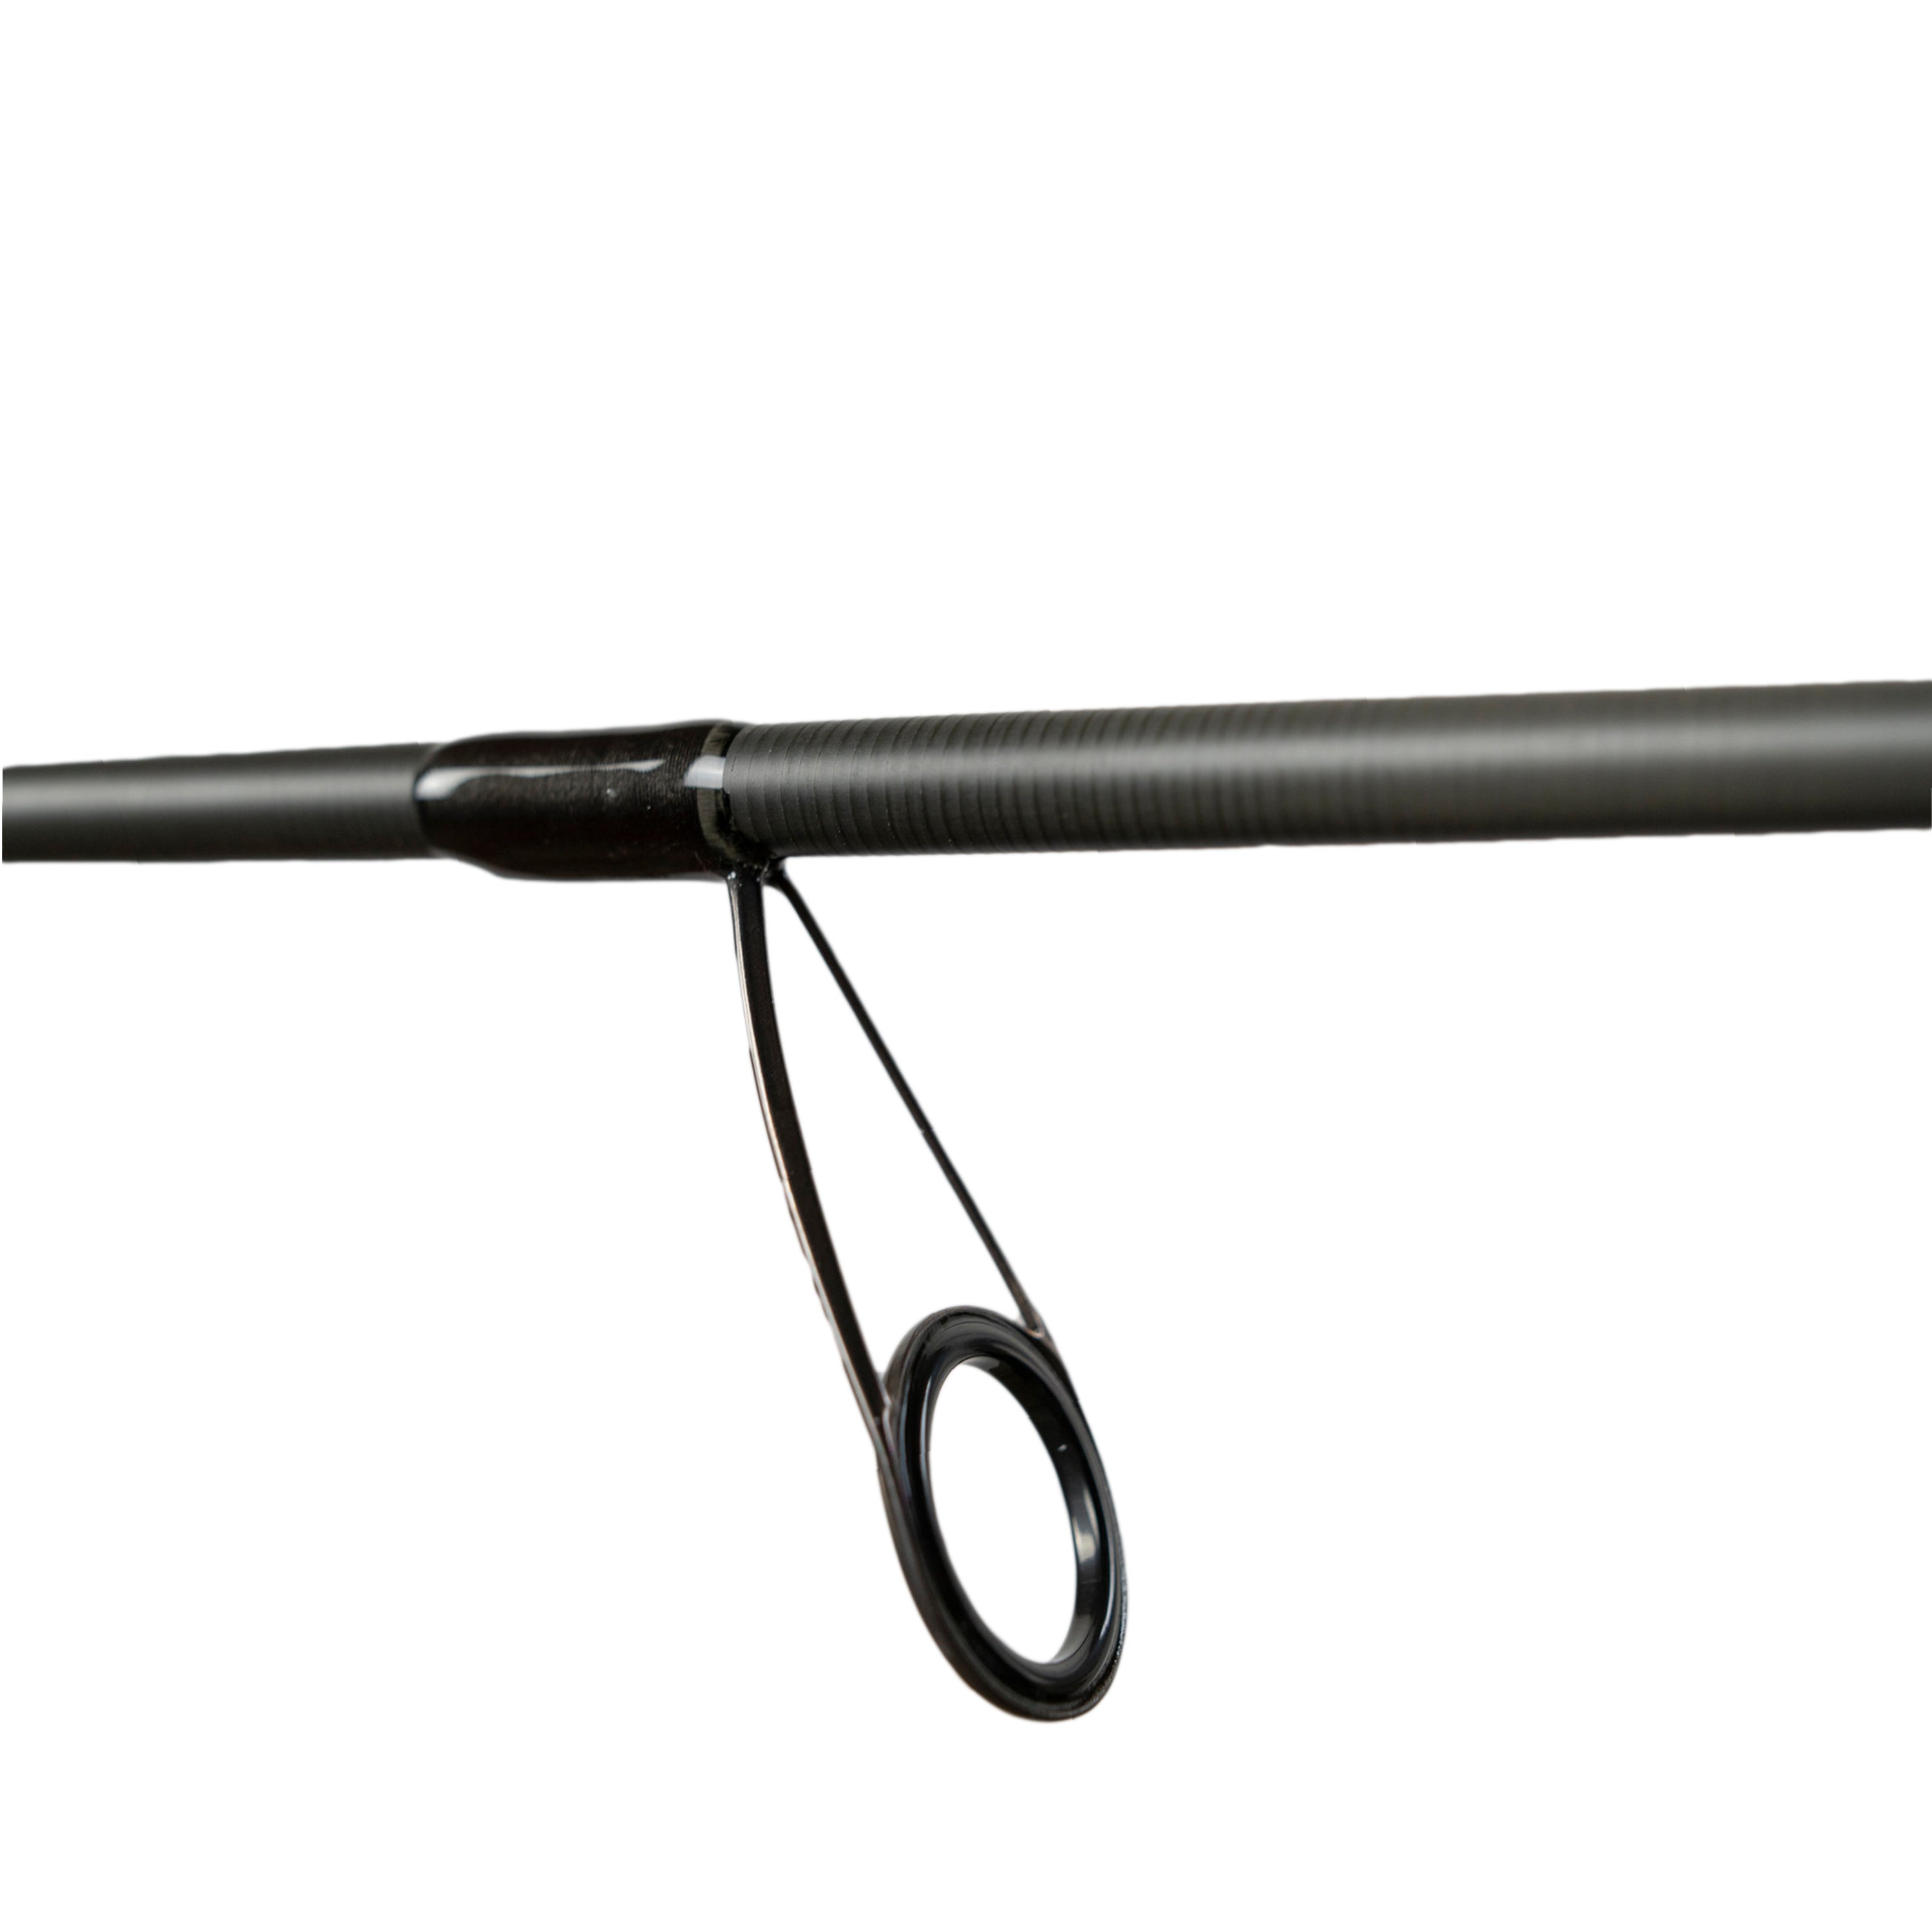 KLX Shakyhead, Tube, Spy Bait Spinning Rods – KISTLER Fishing